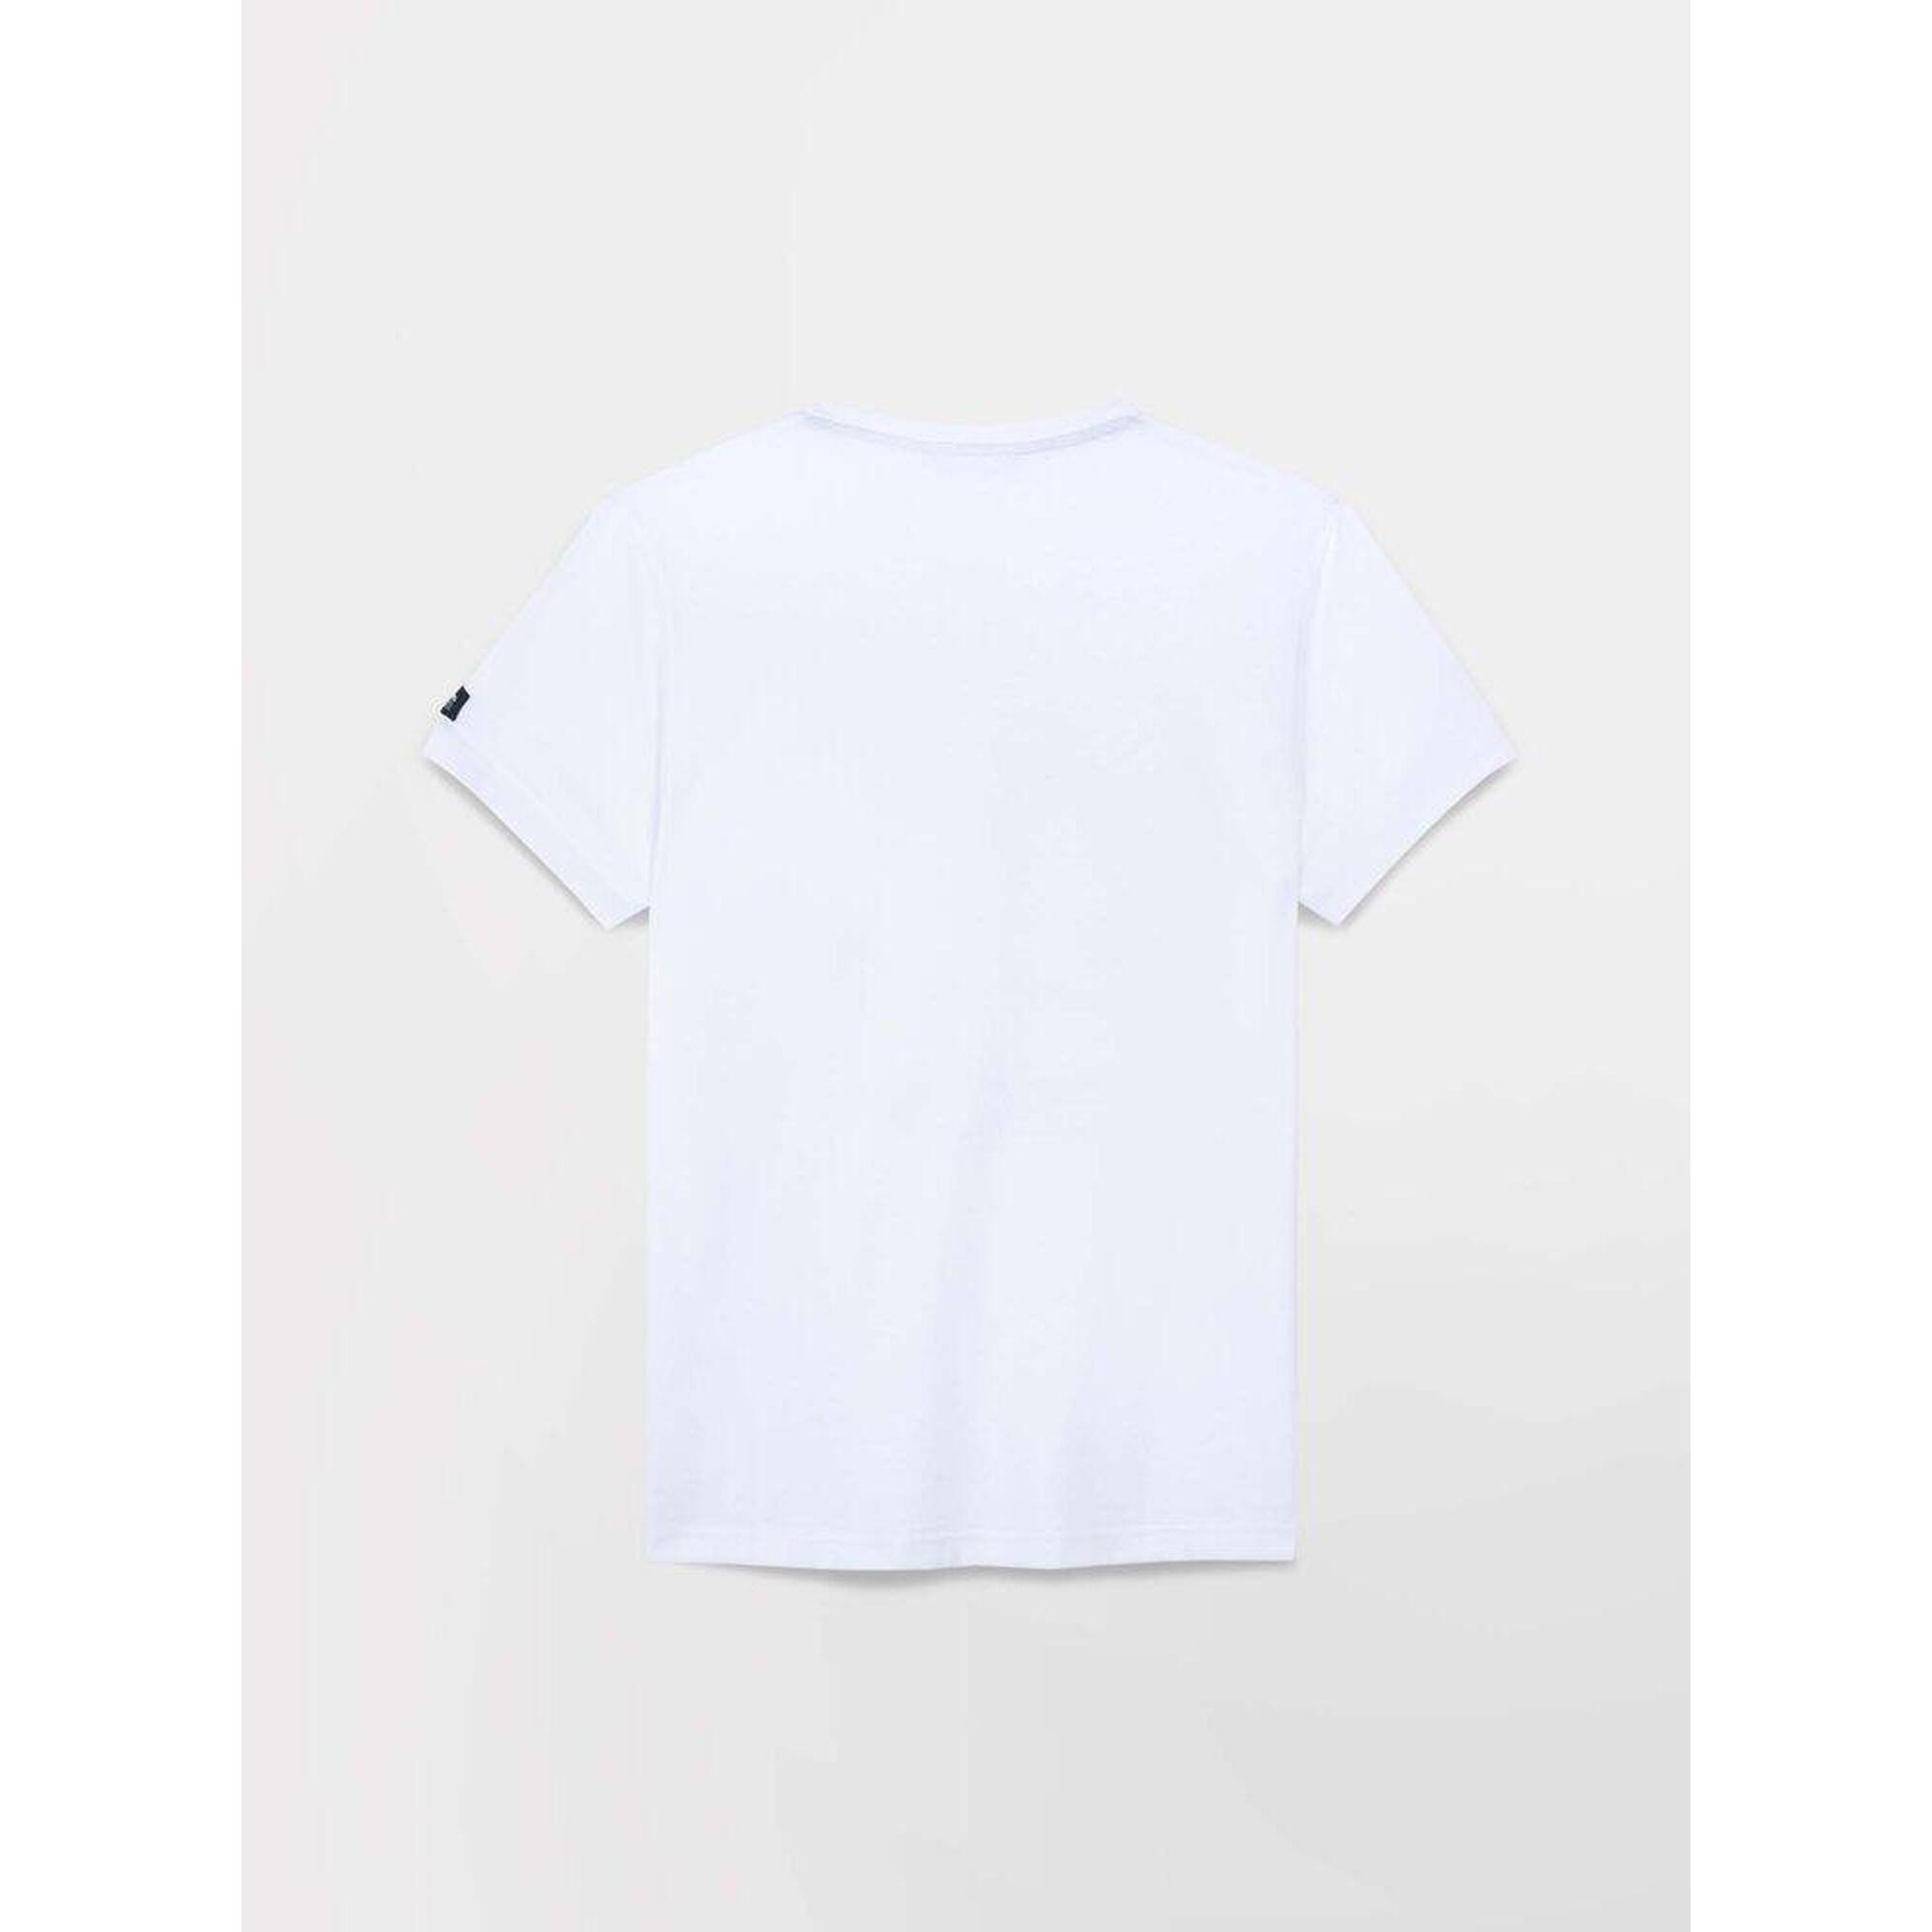 T-shirt manches courtes Homme - DANTETEE Blanc